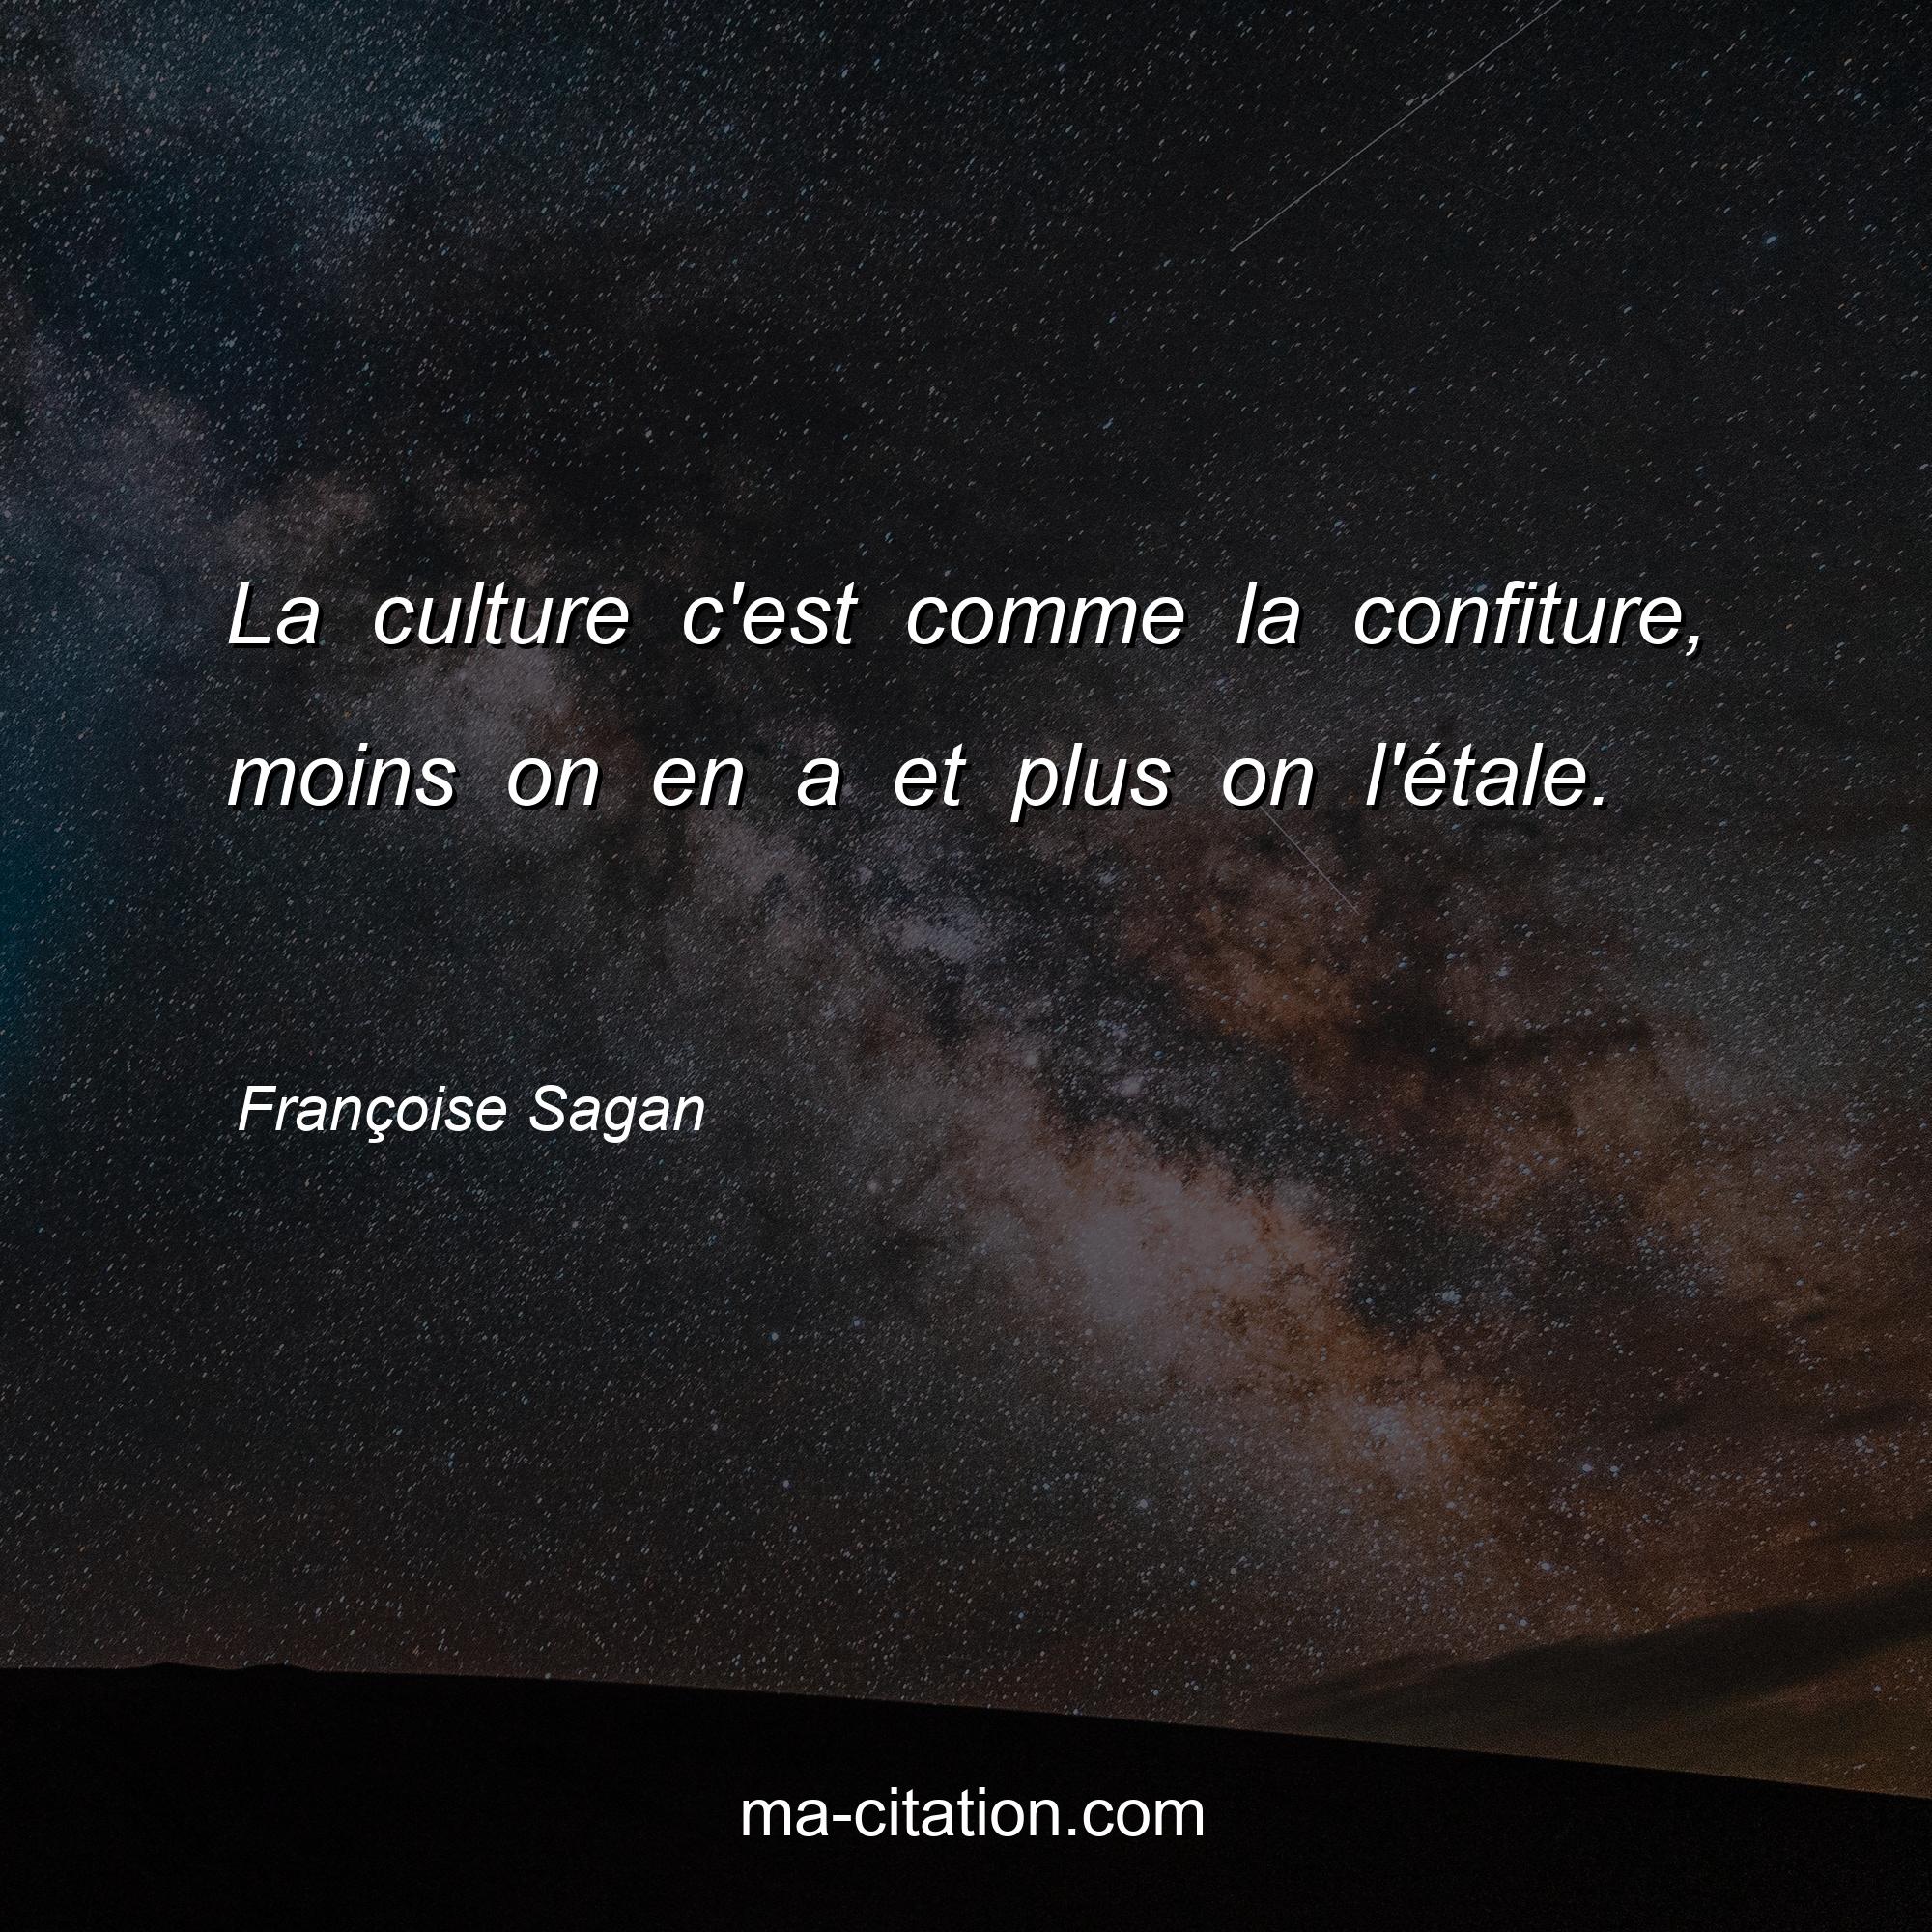 Françoise Sagan : La culture c'est comme la confiture, moins on en a et plus on l'étale. 